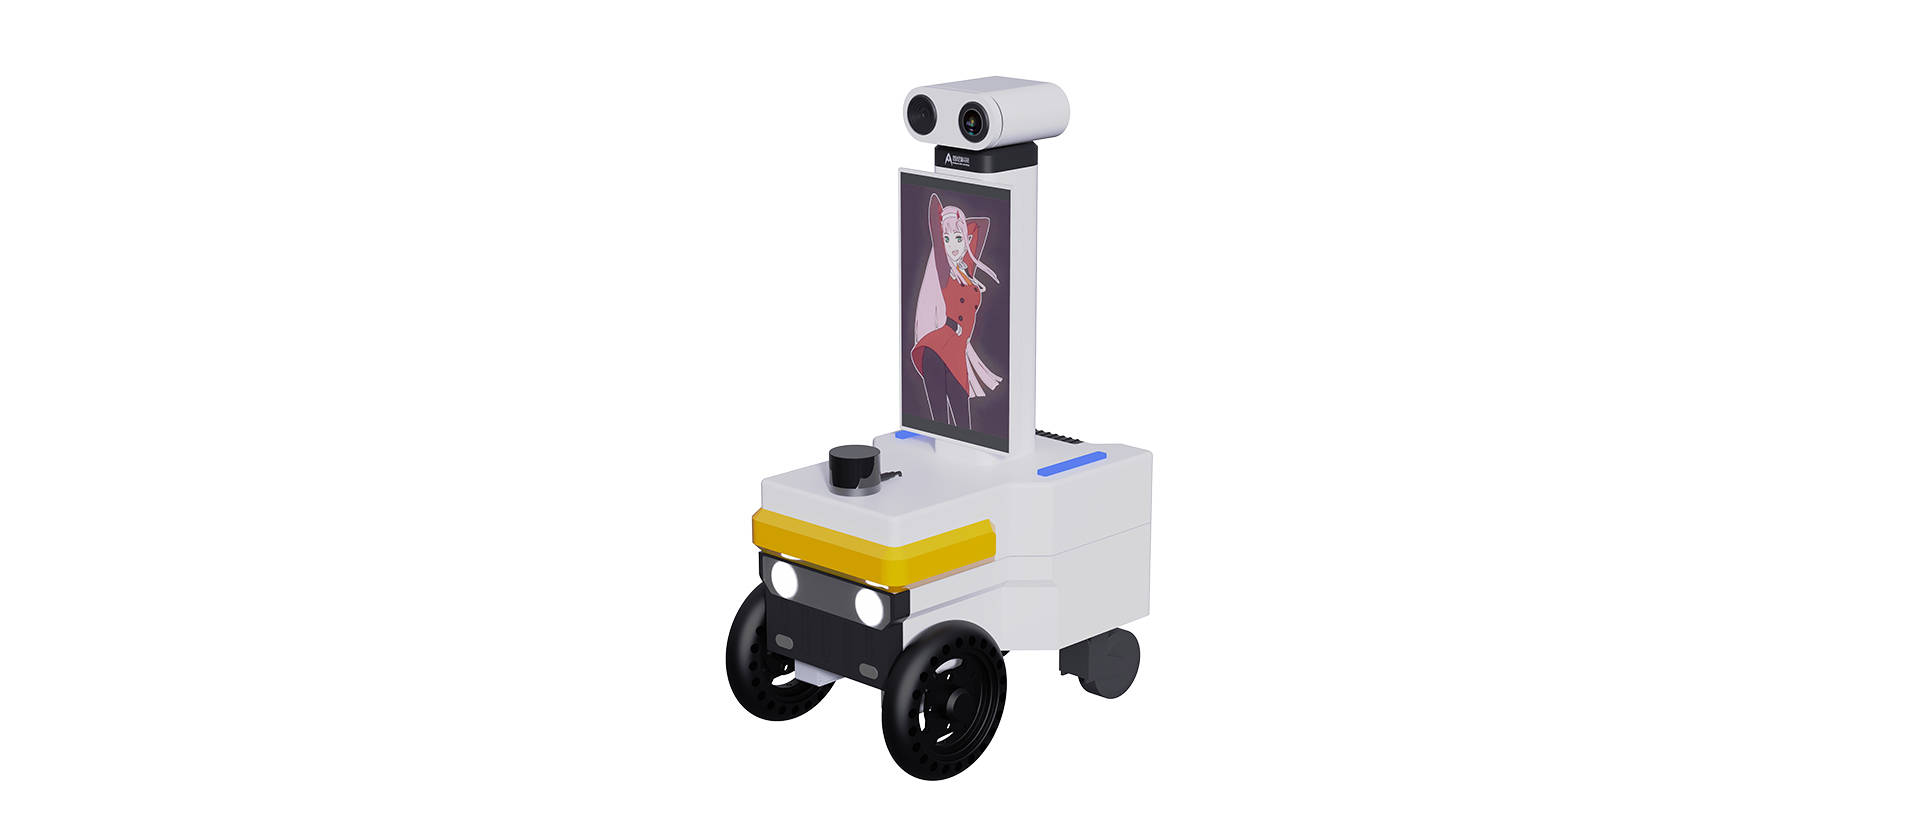 One-Stop kommerziell Roboter Léisung